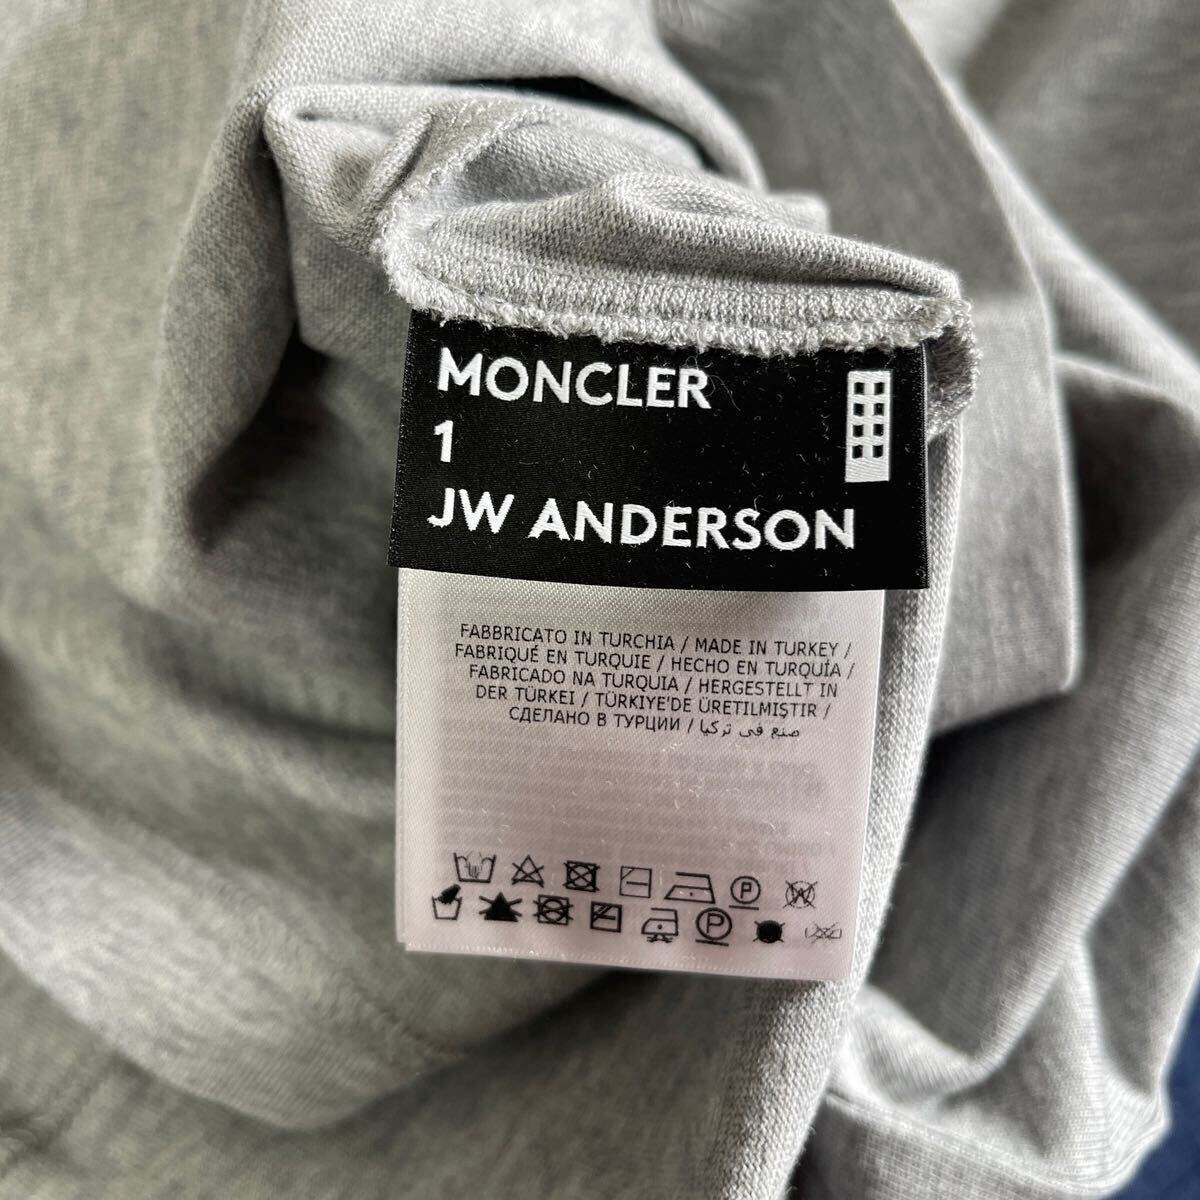 新入荷 本物 新品 40888135 1 MONCLER モンクレール/ ジーニアス/ JW ANDERSON サイズL 大人気 限定高級 半袖カットソー Tシャツの画像7